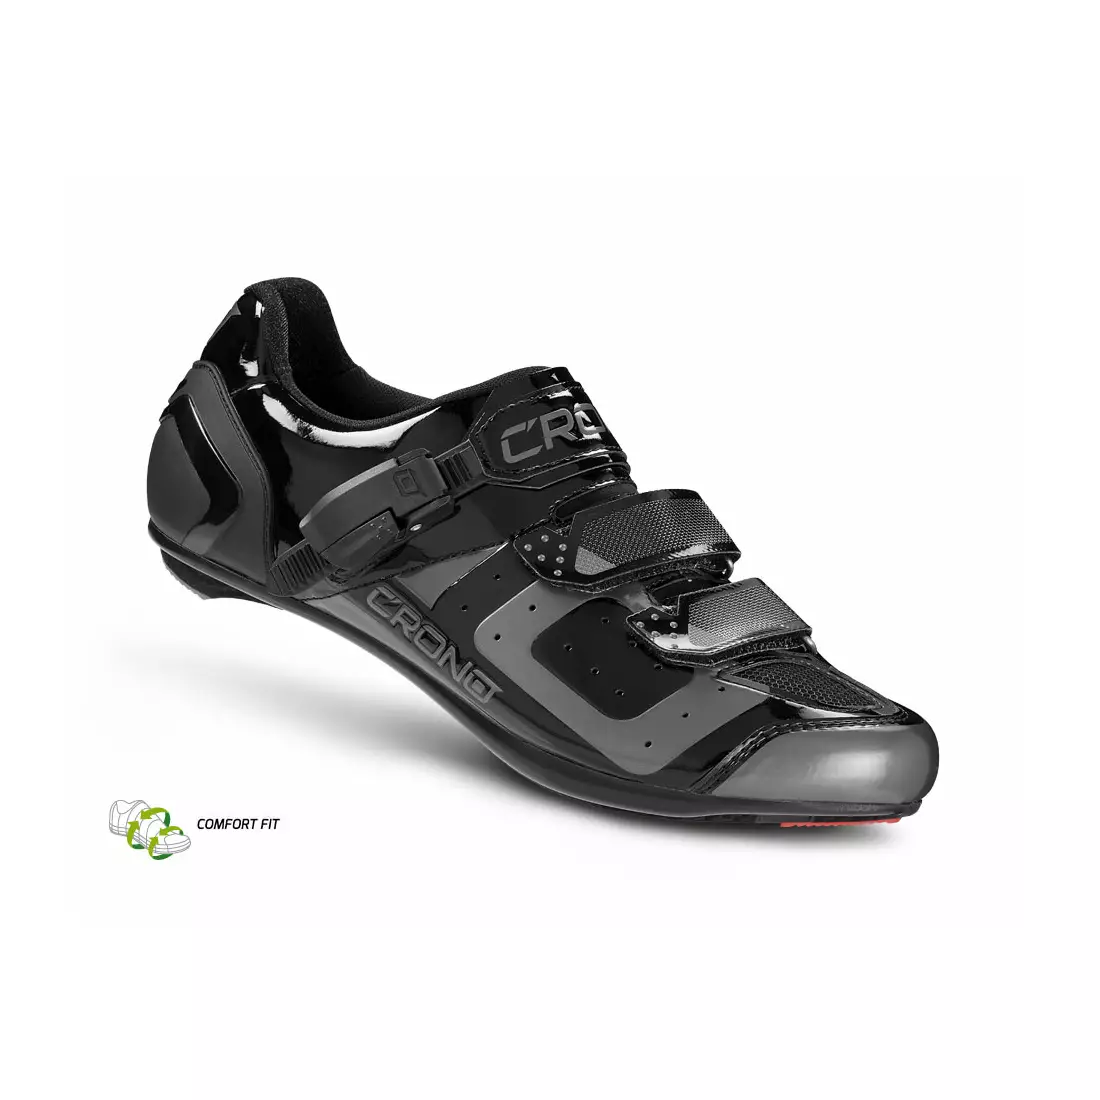 CRONO CR3 nylon - cestná cyklistická obuv, čierna